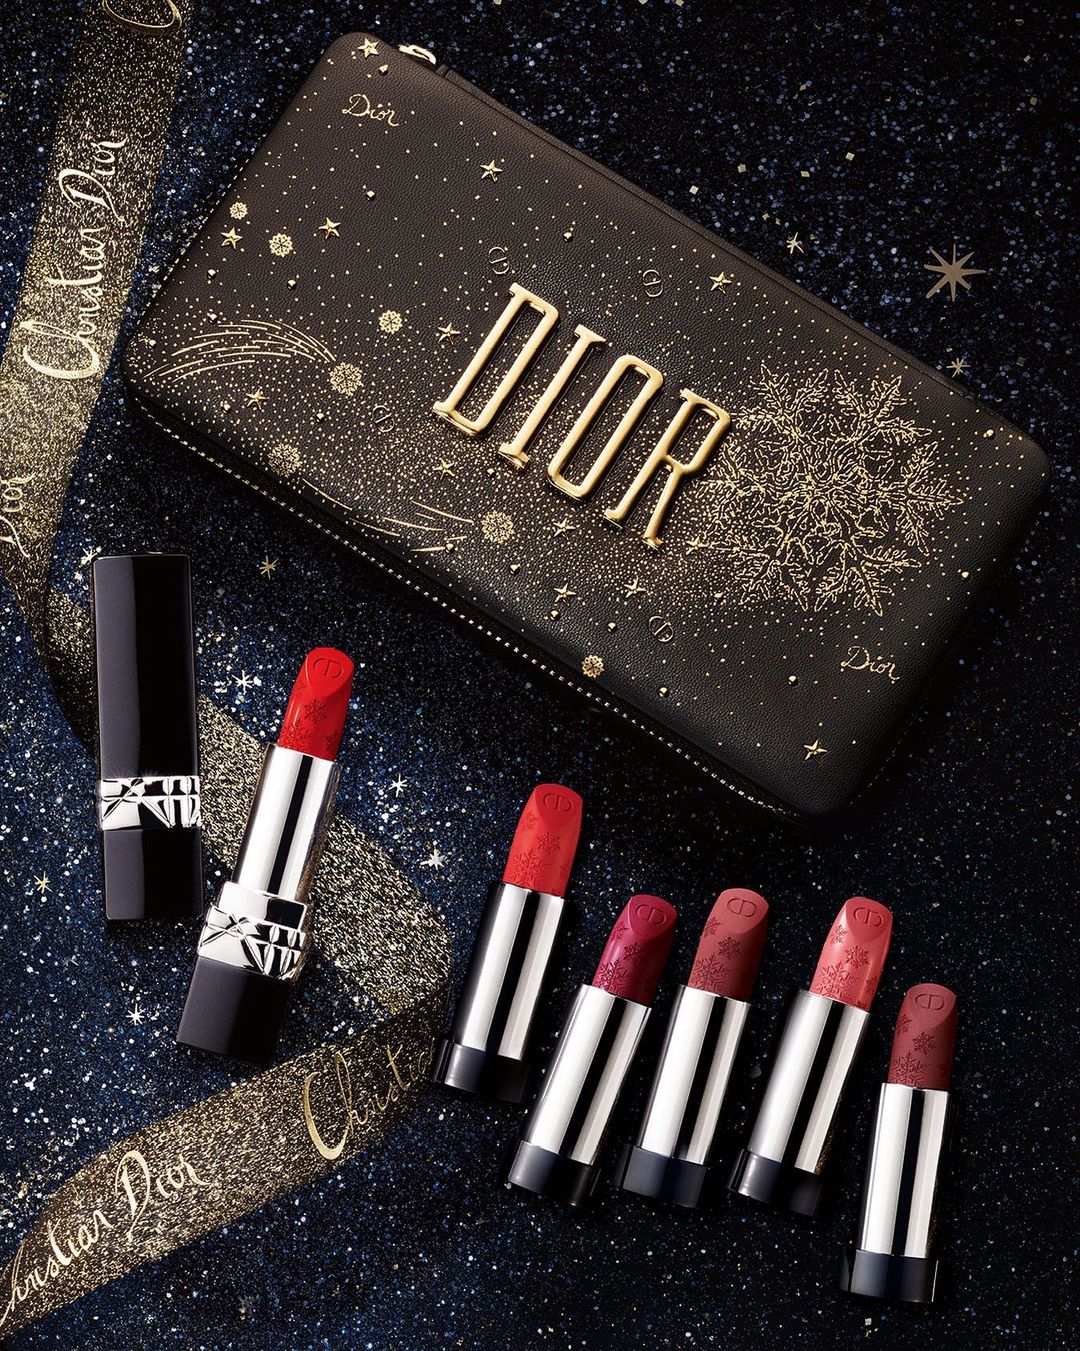 Η ονειρεμένη χριστουγεννιάτικη συλλογή μακιγιάζ του οίκου Dior Η συλλογή Golden Nights με την υπογραφή του Peter Philips, αιχμαλωτίζει όλη τη μαγεία και τη λάμψη των Χριστουγέννων.